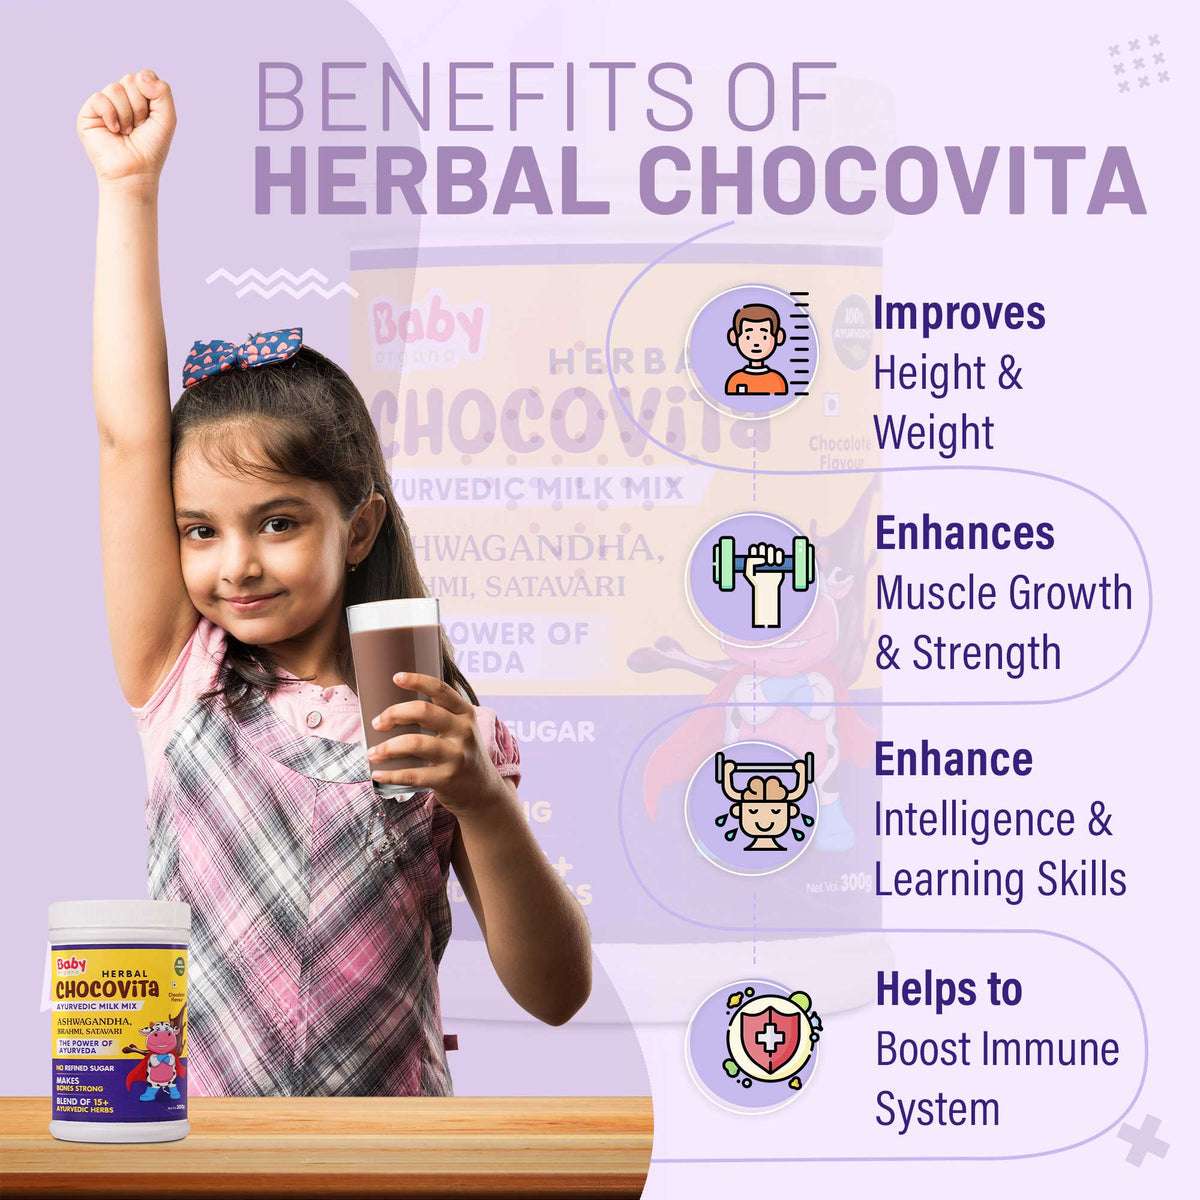 Babyorgano Herbal Chocovita Benefits